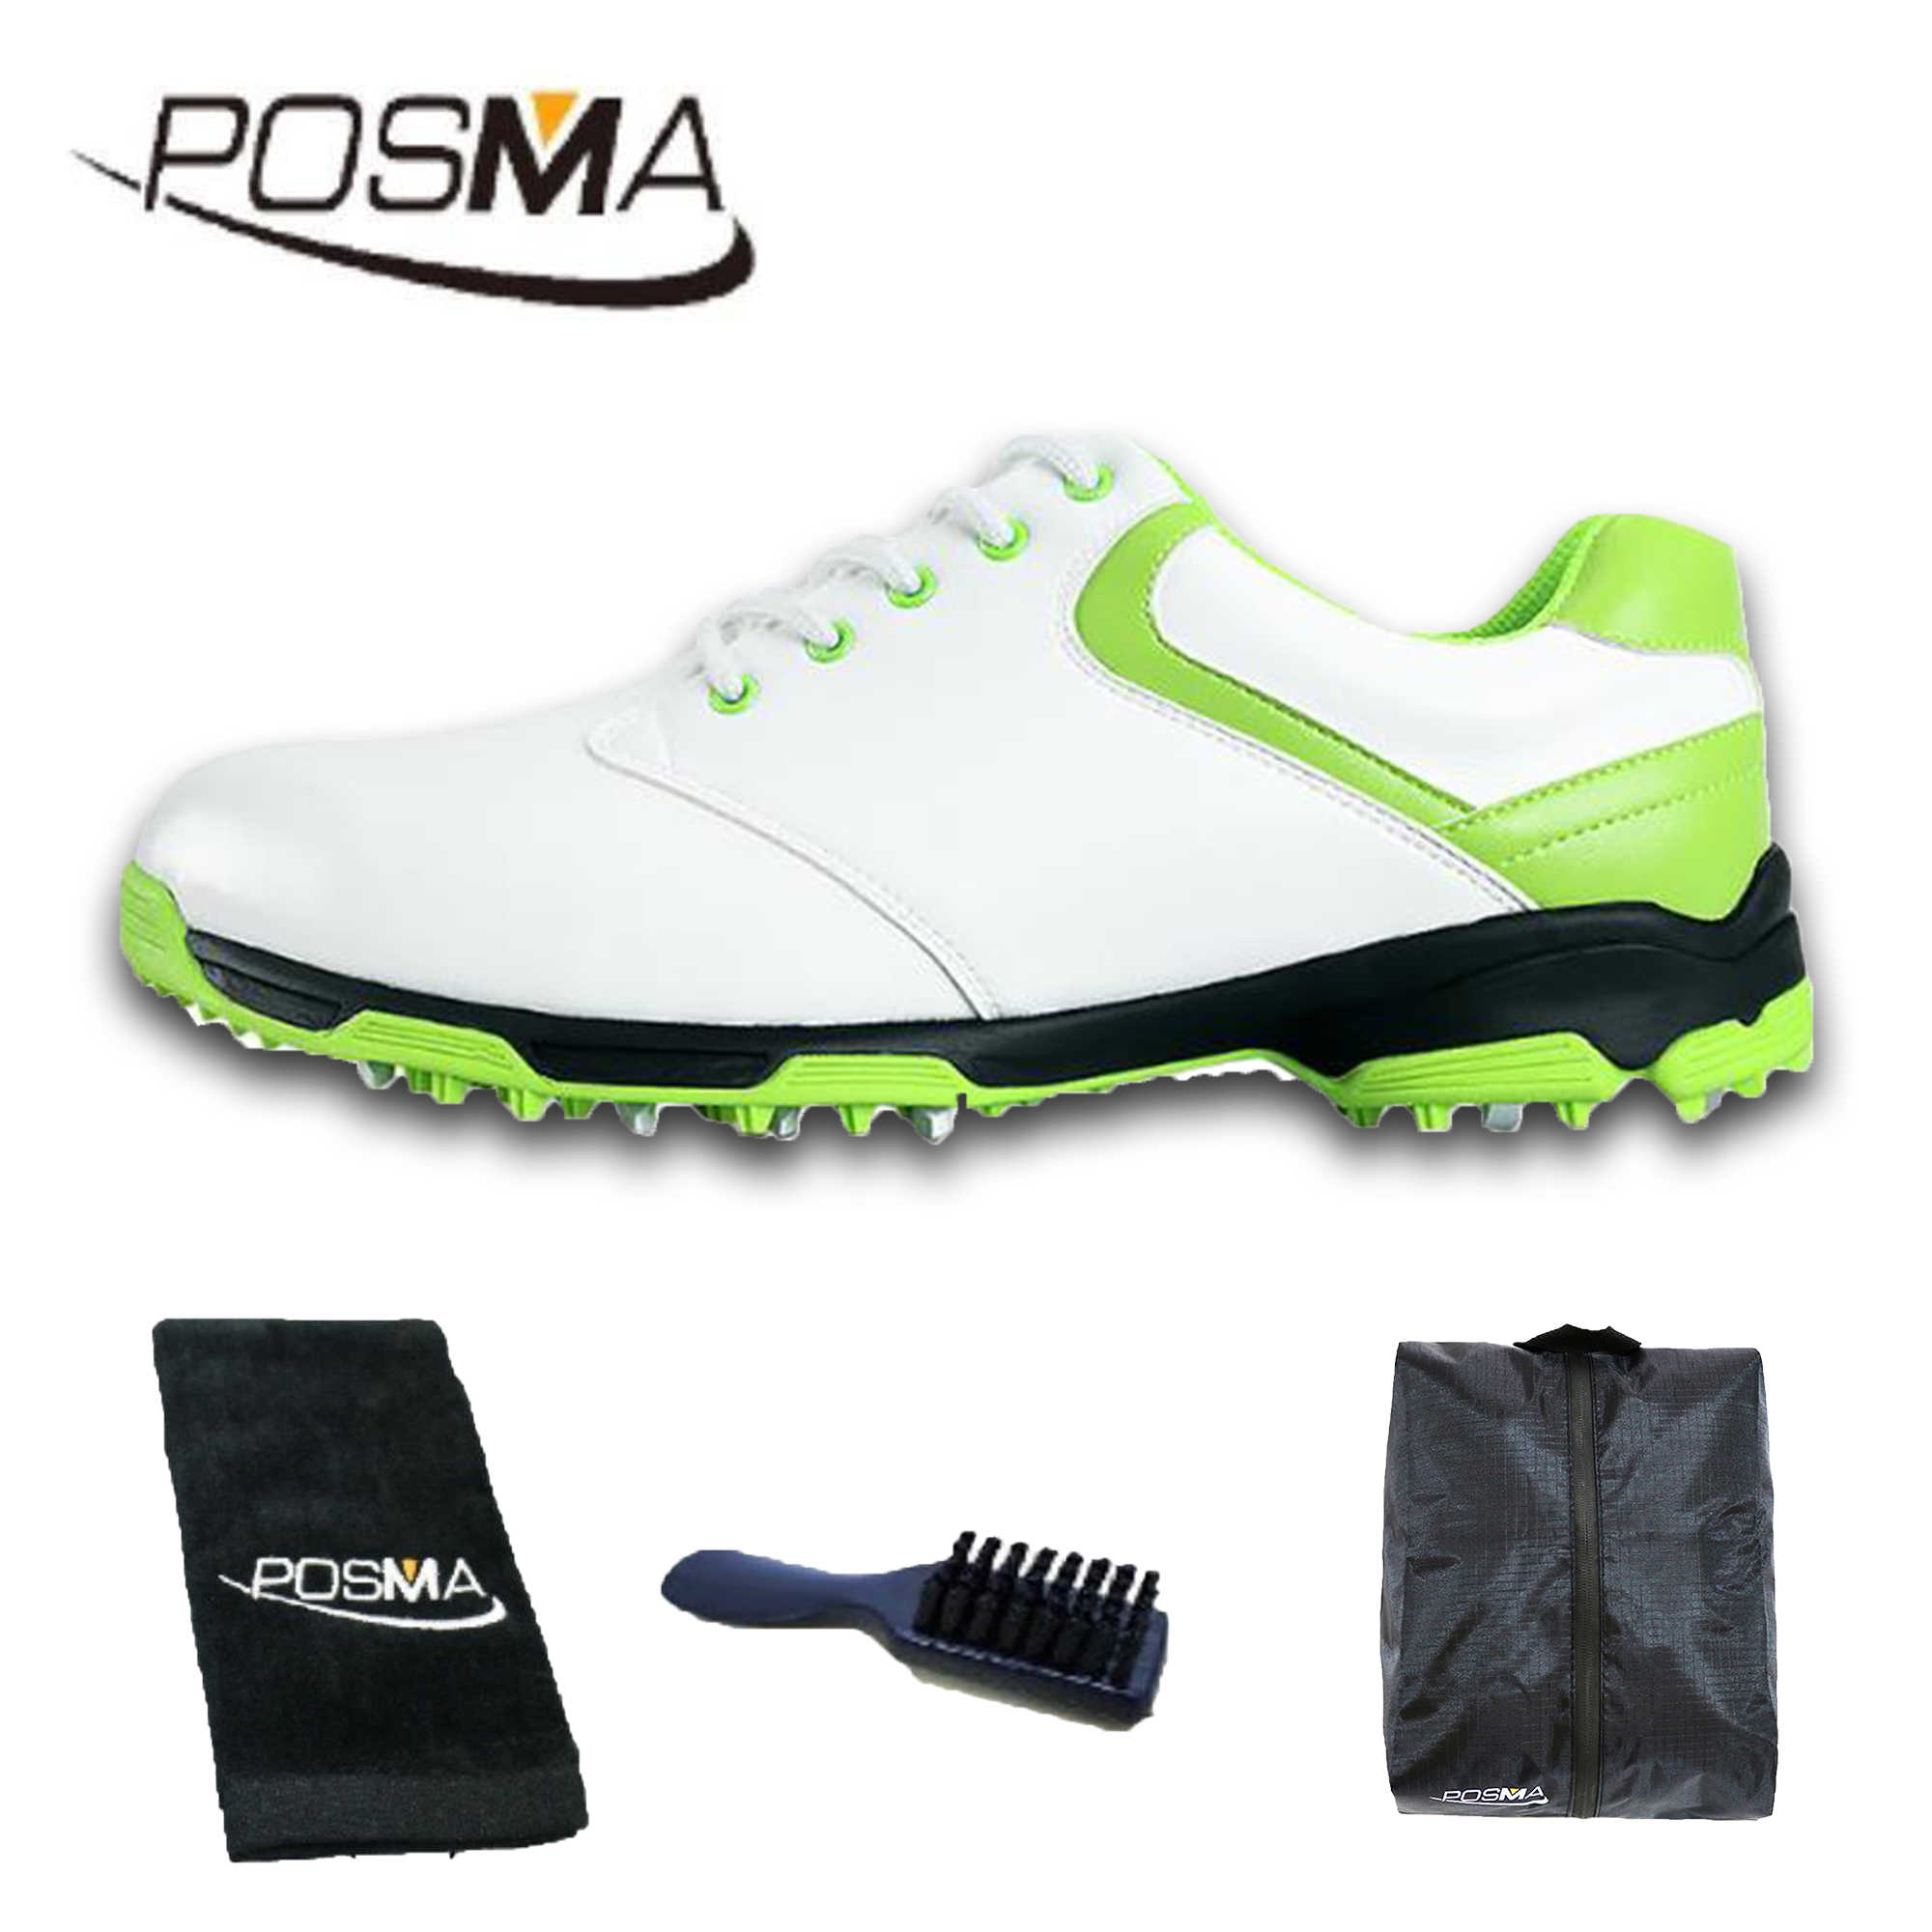 高爾夫球鞋女款球鞋 防側滑釘鞋 防水透氣 舒適柔軟  GSH051 白 綠 配POSMA鞋包 2合1清潔刷   毛巾